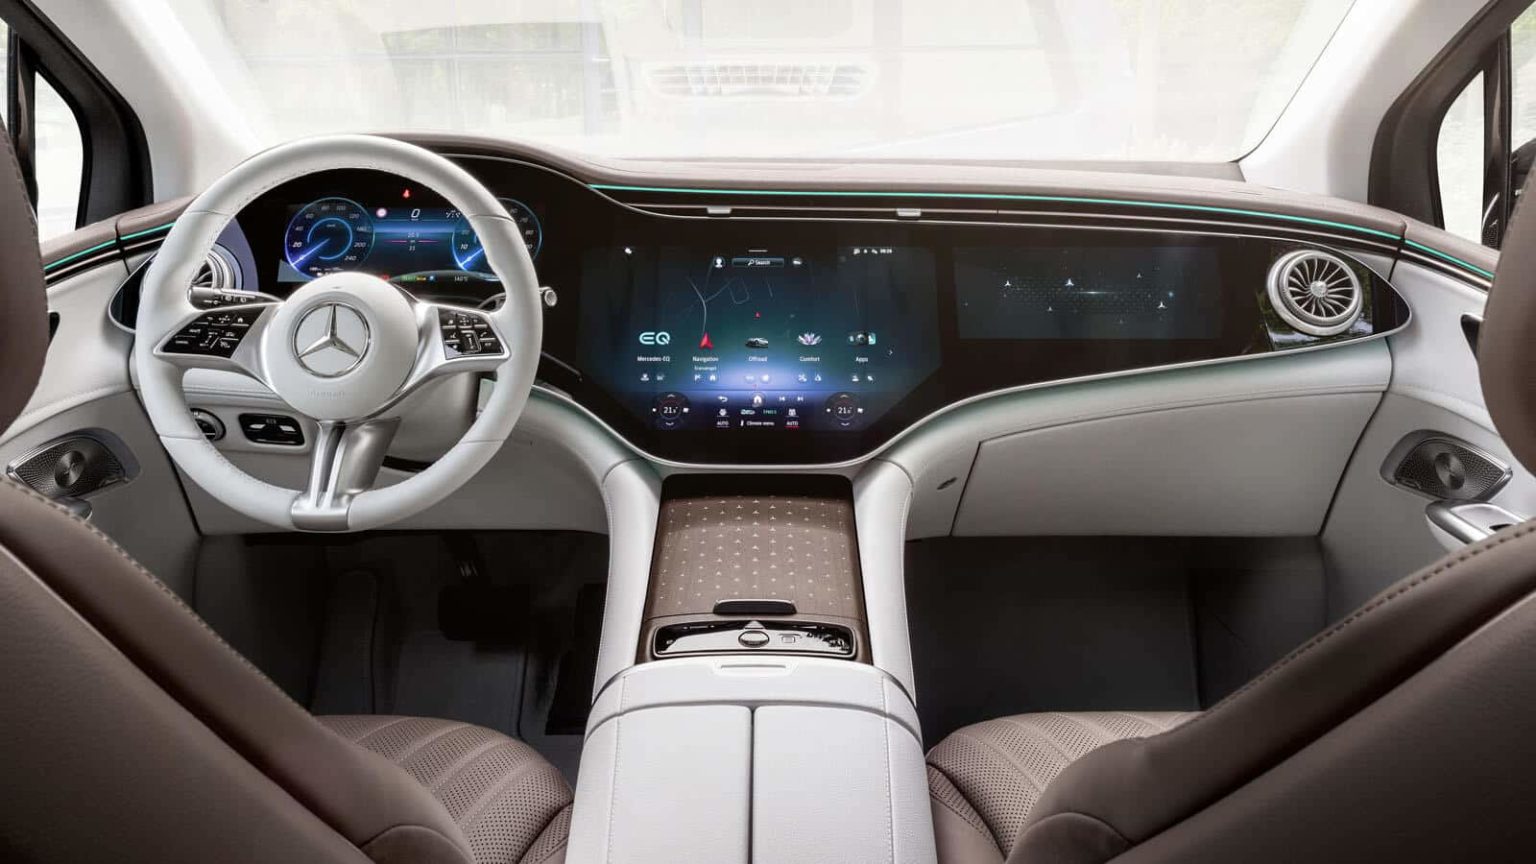 Mercedes Benz : le stationnement autonome approuvé par KBA